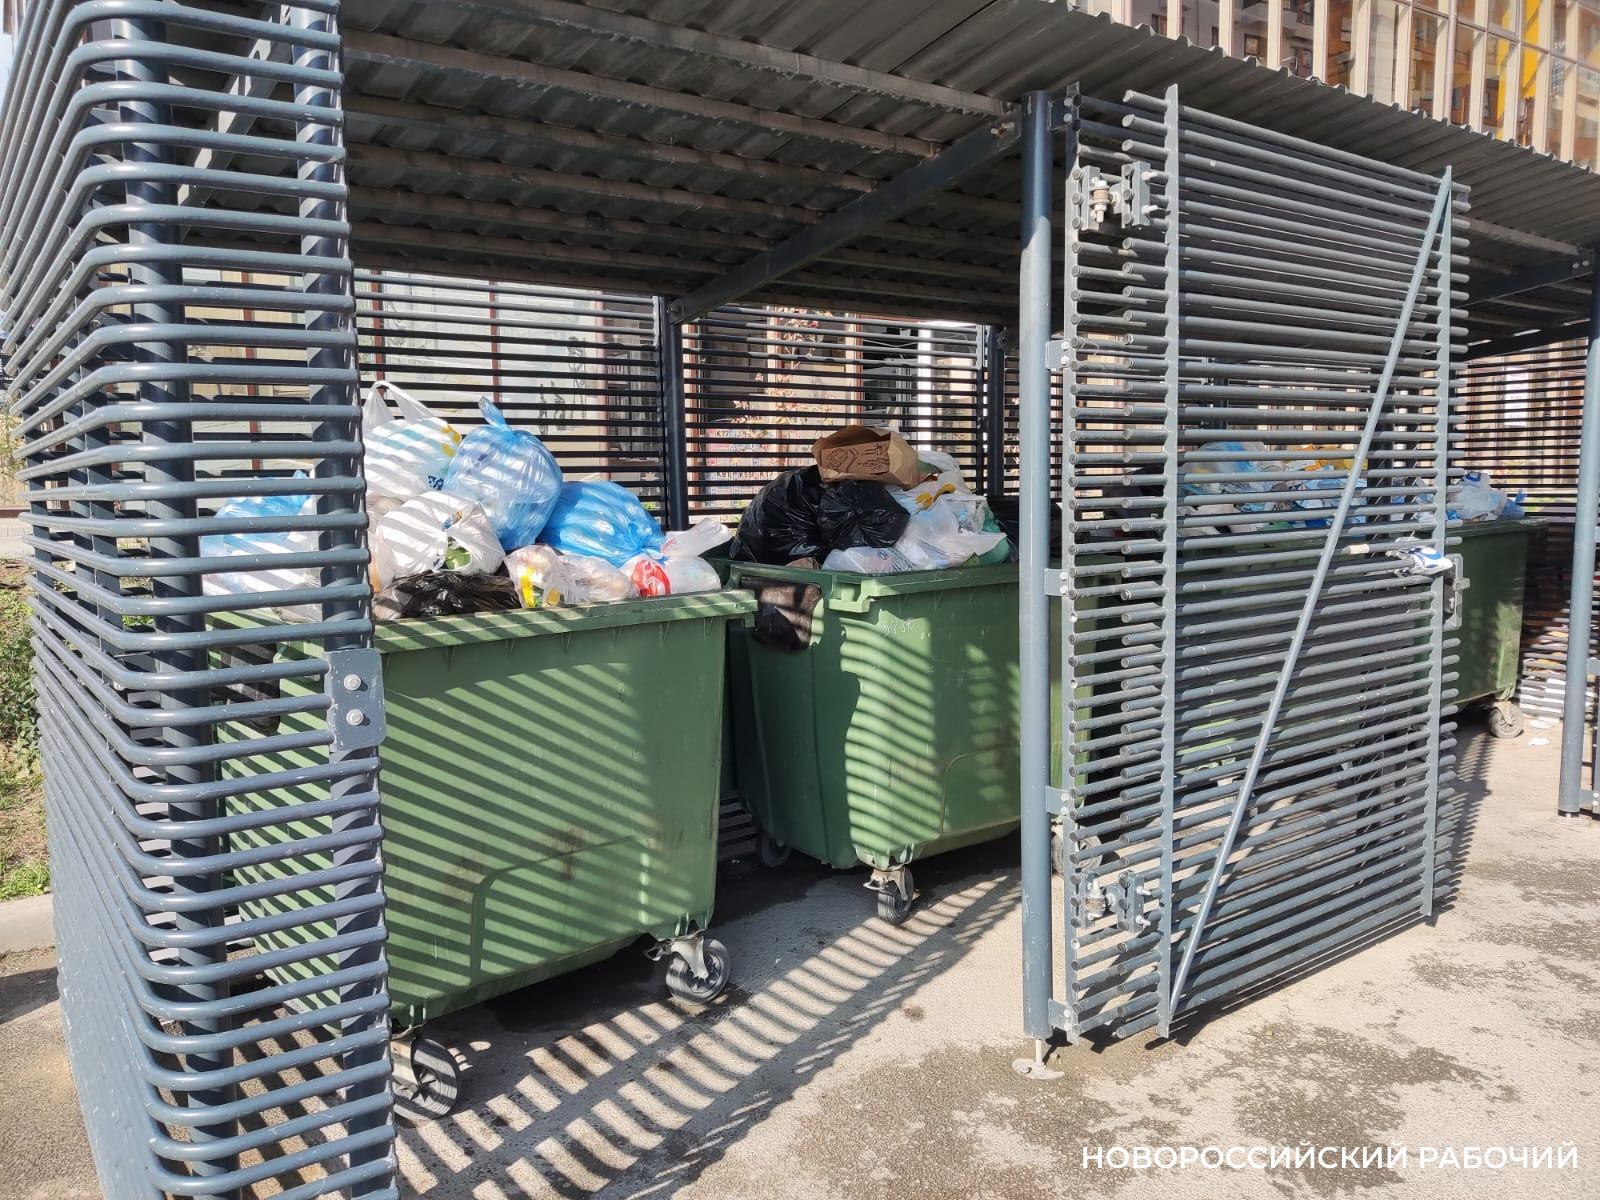 В Новороссийске найдены мусорные площадки, которые соответствуют СанПиНу. Такое возможно?